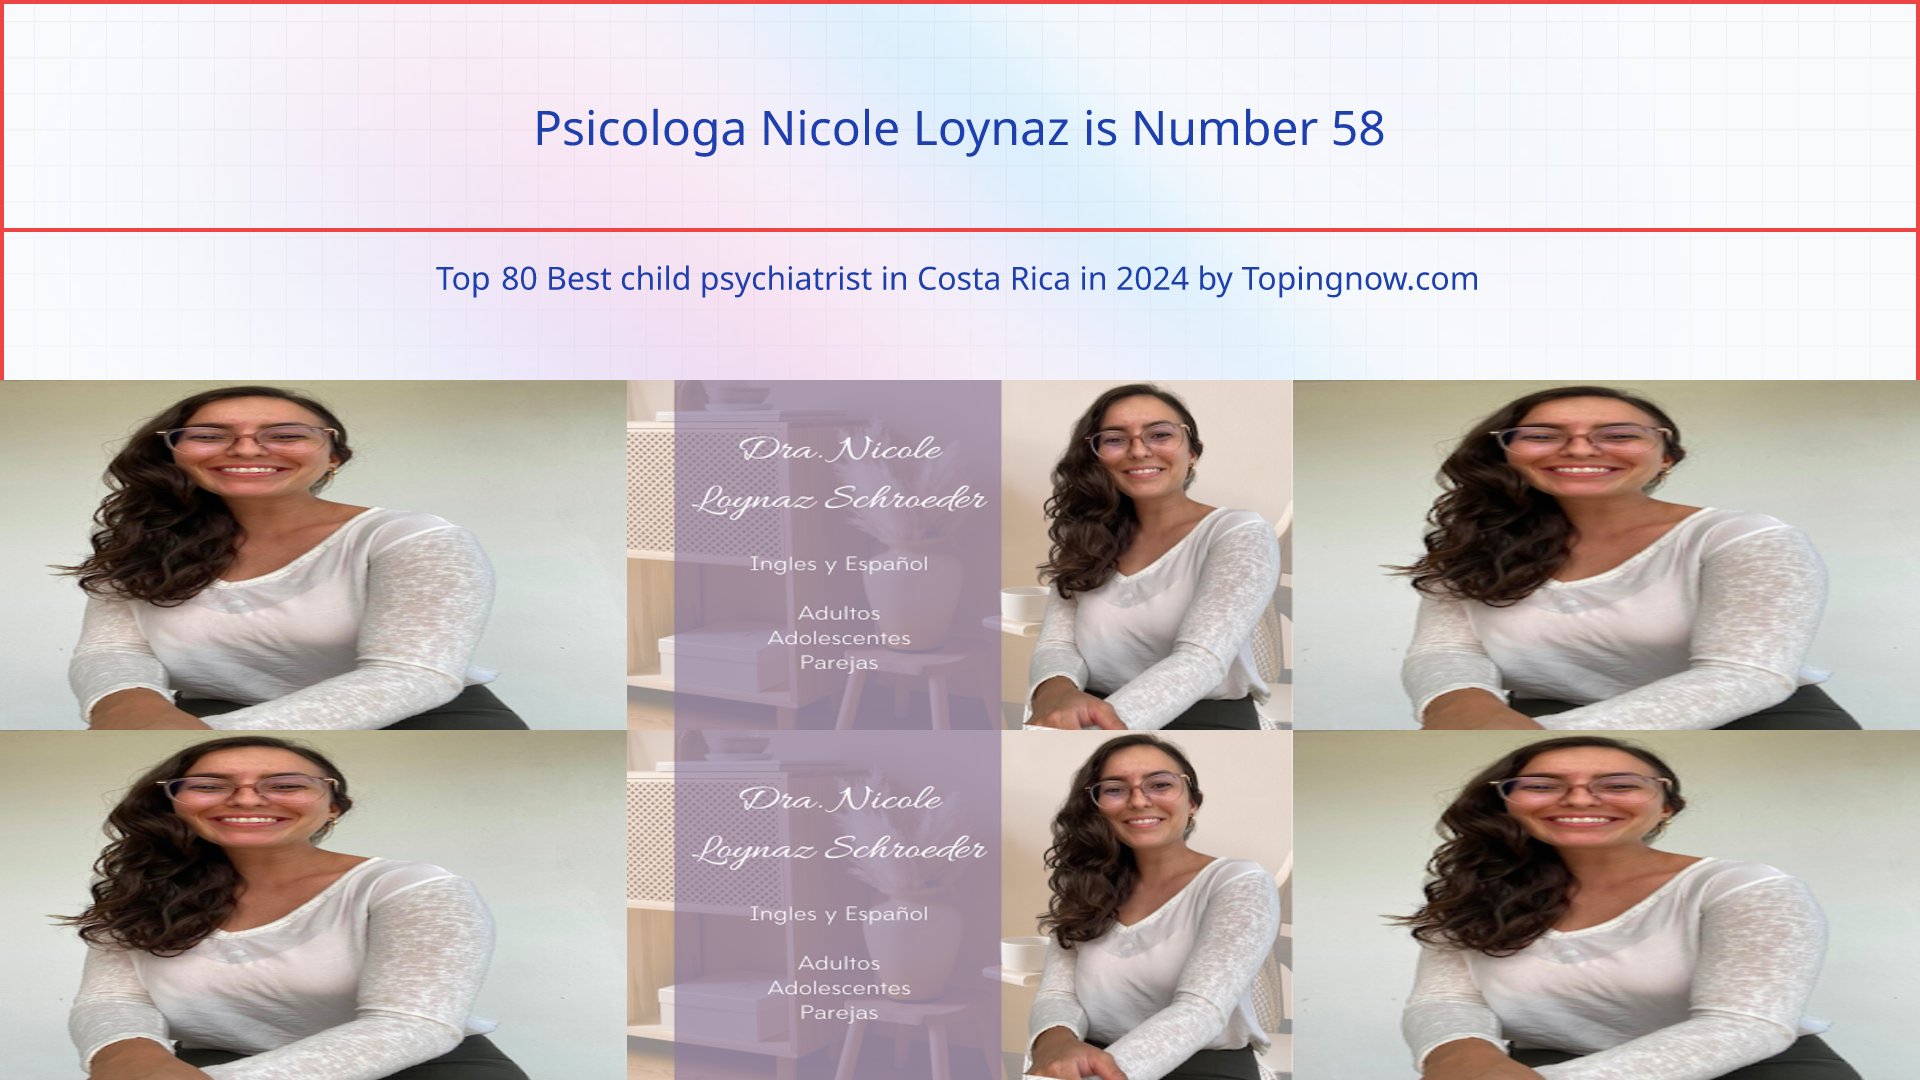 Psicologa Nicole Loynaz: Top 80 Best child psychiatrist in Costa Rica in 2024